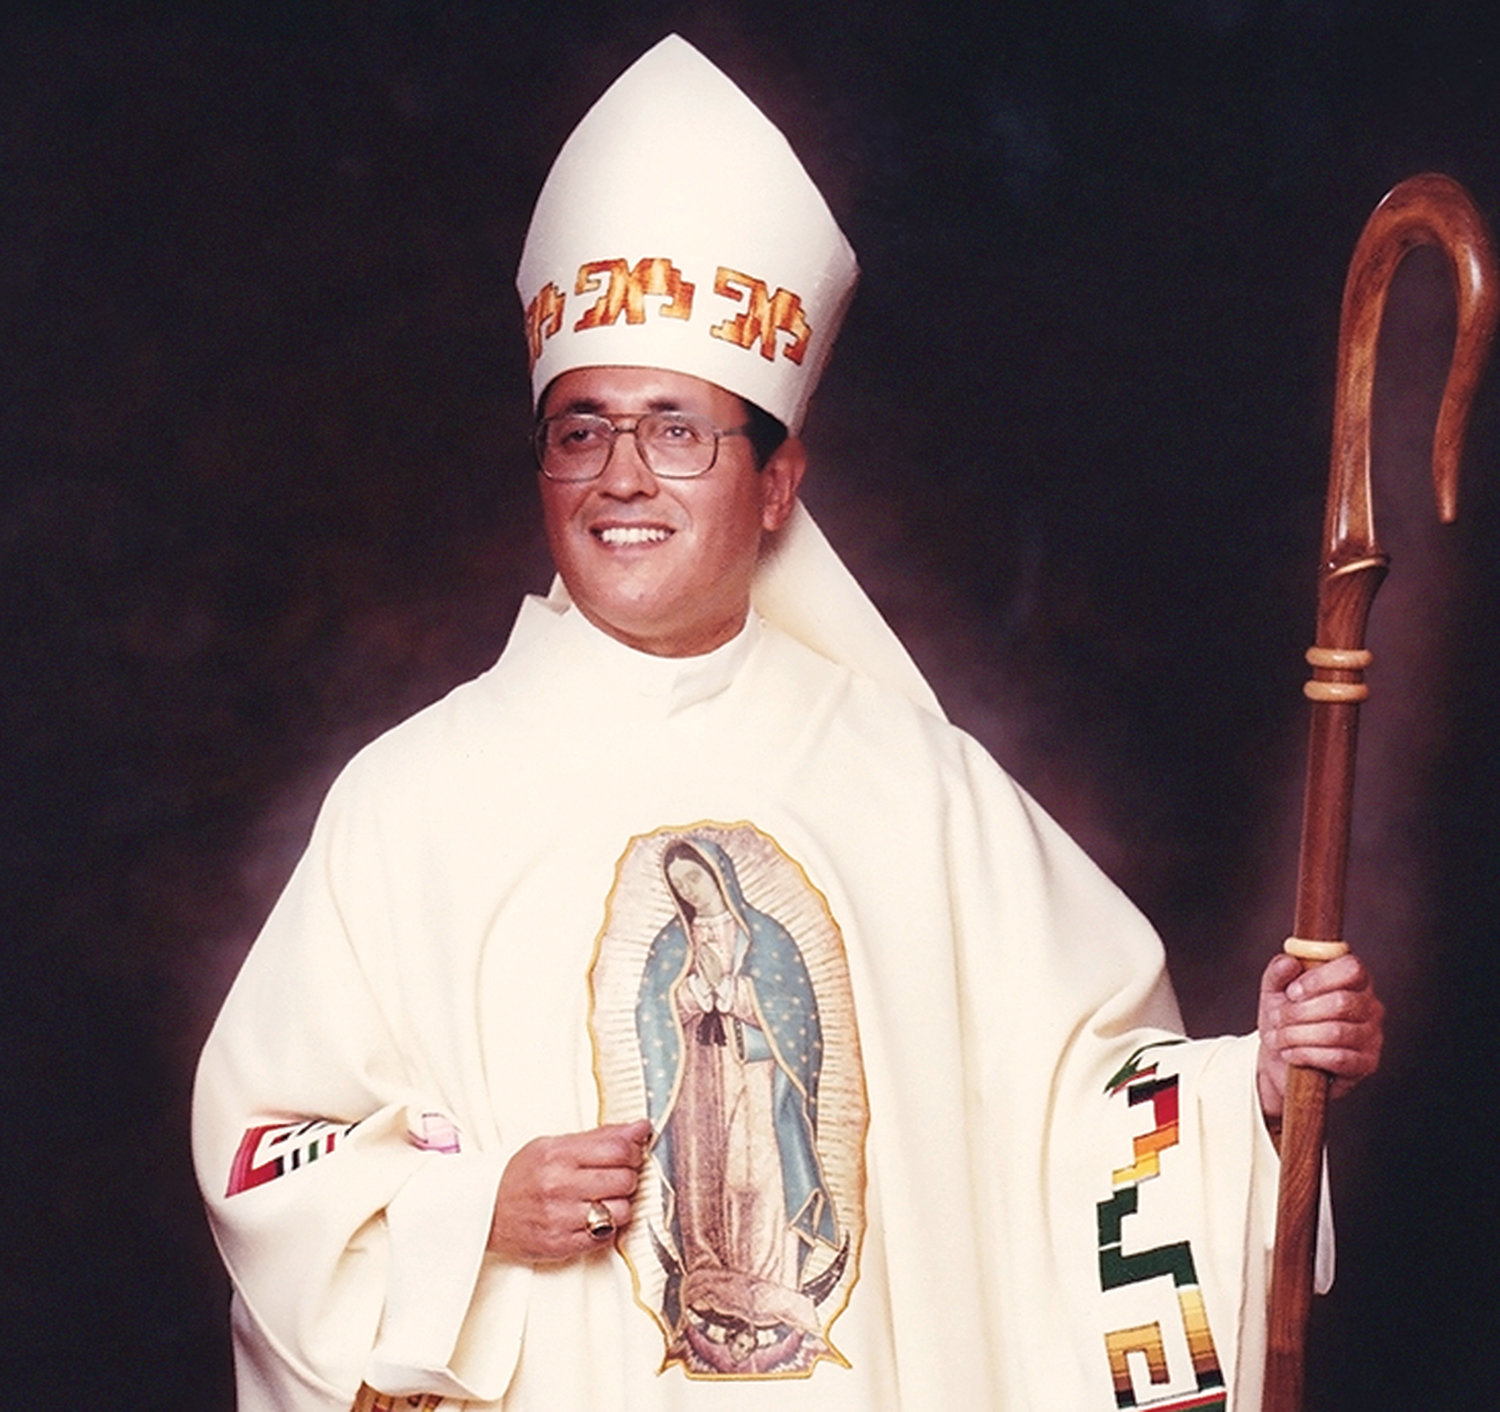 VENERABLE OBISPO—El obispo auxiliar Alphonse Gallegos, O.A.R., de Sacramento fue declarado venerable en 2016 por el papa Francisco. Ordenado sacerdote en la Orden de los Agustinos Recoletos, él fue conocido como el “obispo de los barrios.”  Su causa de canonización se inició en 2005. Despues de algunos años en el sacerdocio, él celebraba misa en la parroquia del Sagrado Corazón en Suffern cuando fue asignado al monasterio de Tagaste.